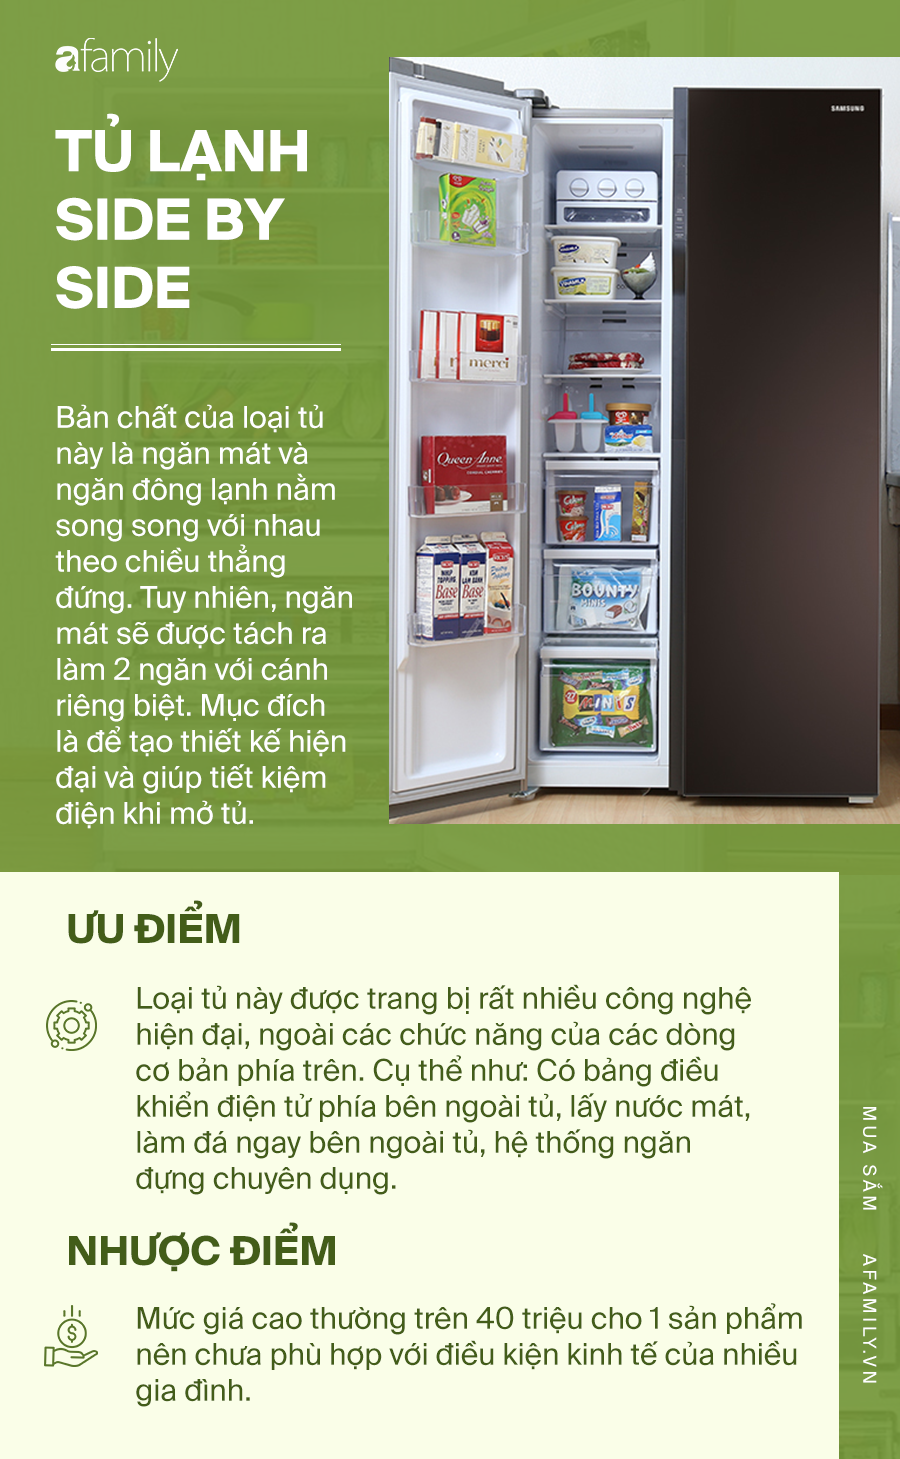 Kinh nghiệm chọn mua tủ lạnh theo ưu, nhược điểm: Mỗi loại một kiểu, phải tìm hiểu mới mong lựa được cái ưng ý nhất - Ảnh 5.